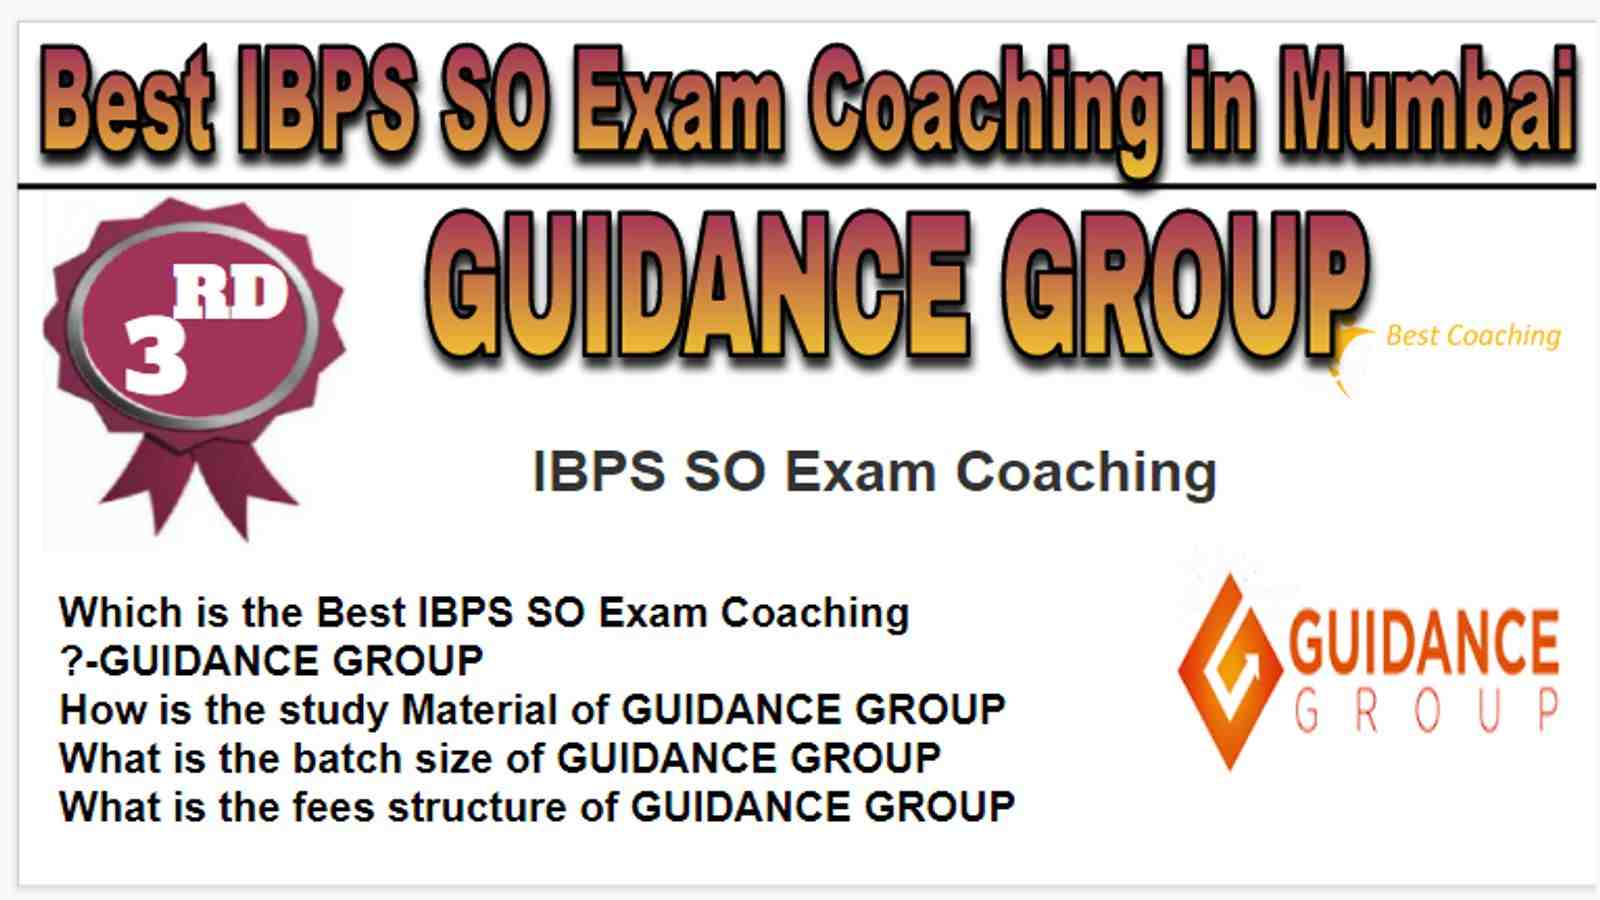 Rank 3 Best IBPS SO Exam Coaching in Mumbai